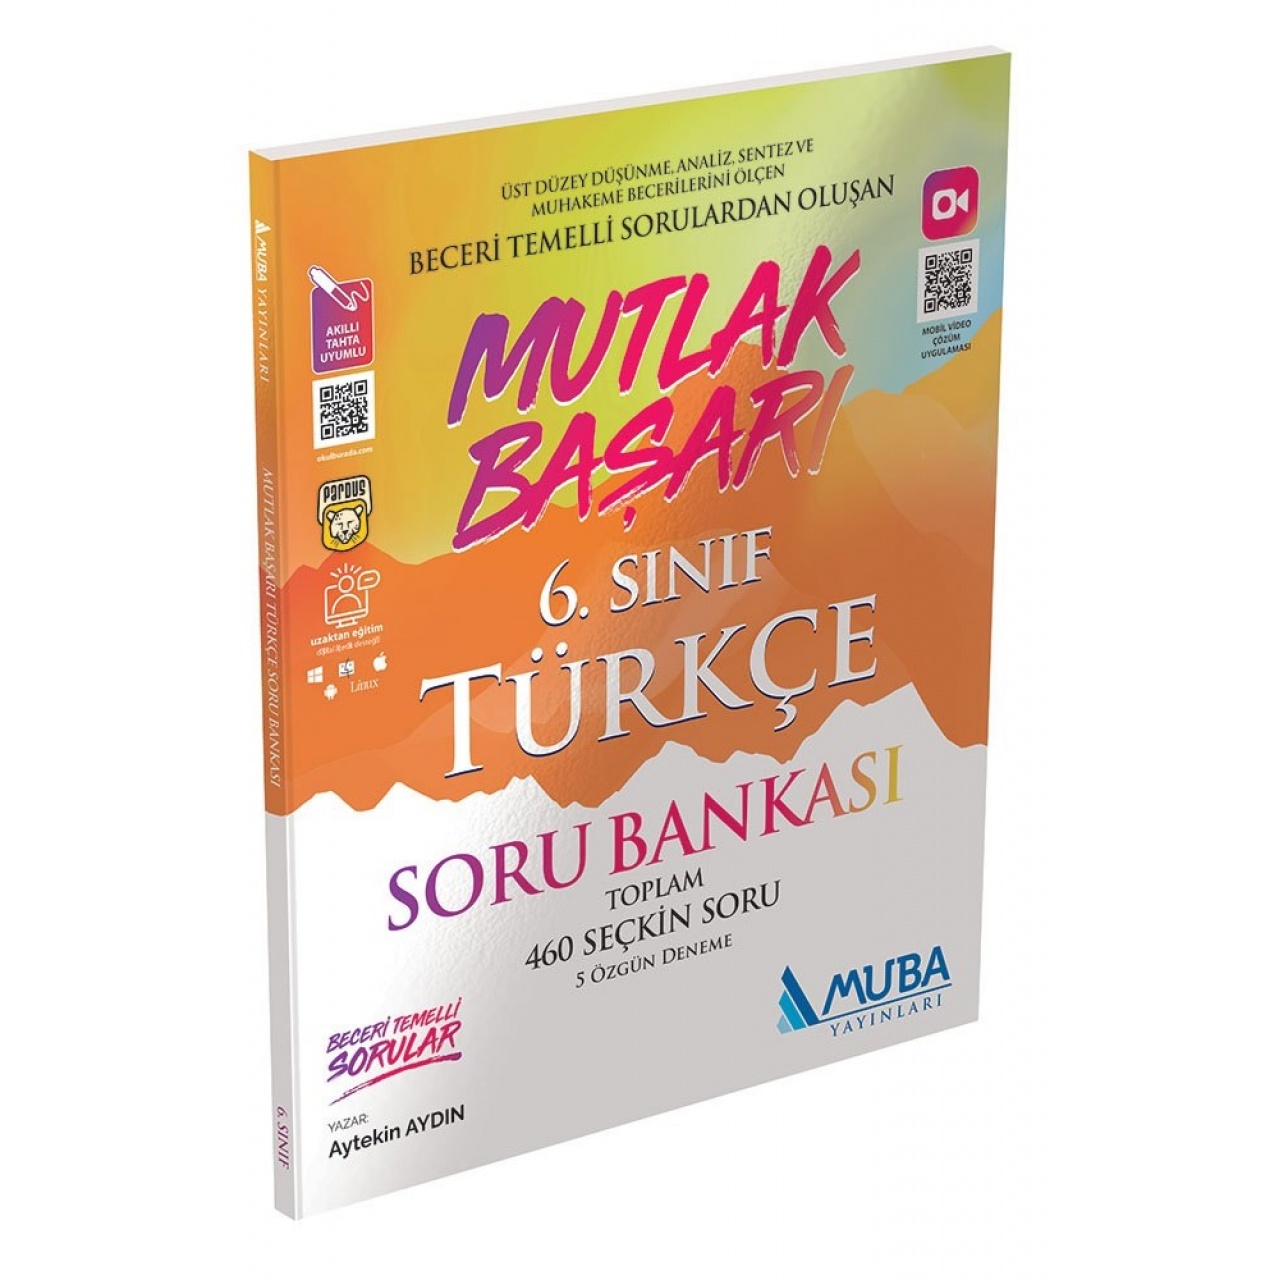 6. Sınıf Mutlak Başarı Türkçe Soru Bankası Muba Yayınları